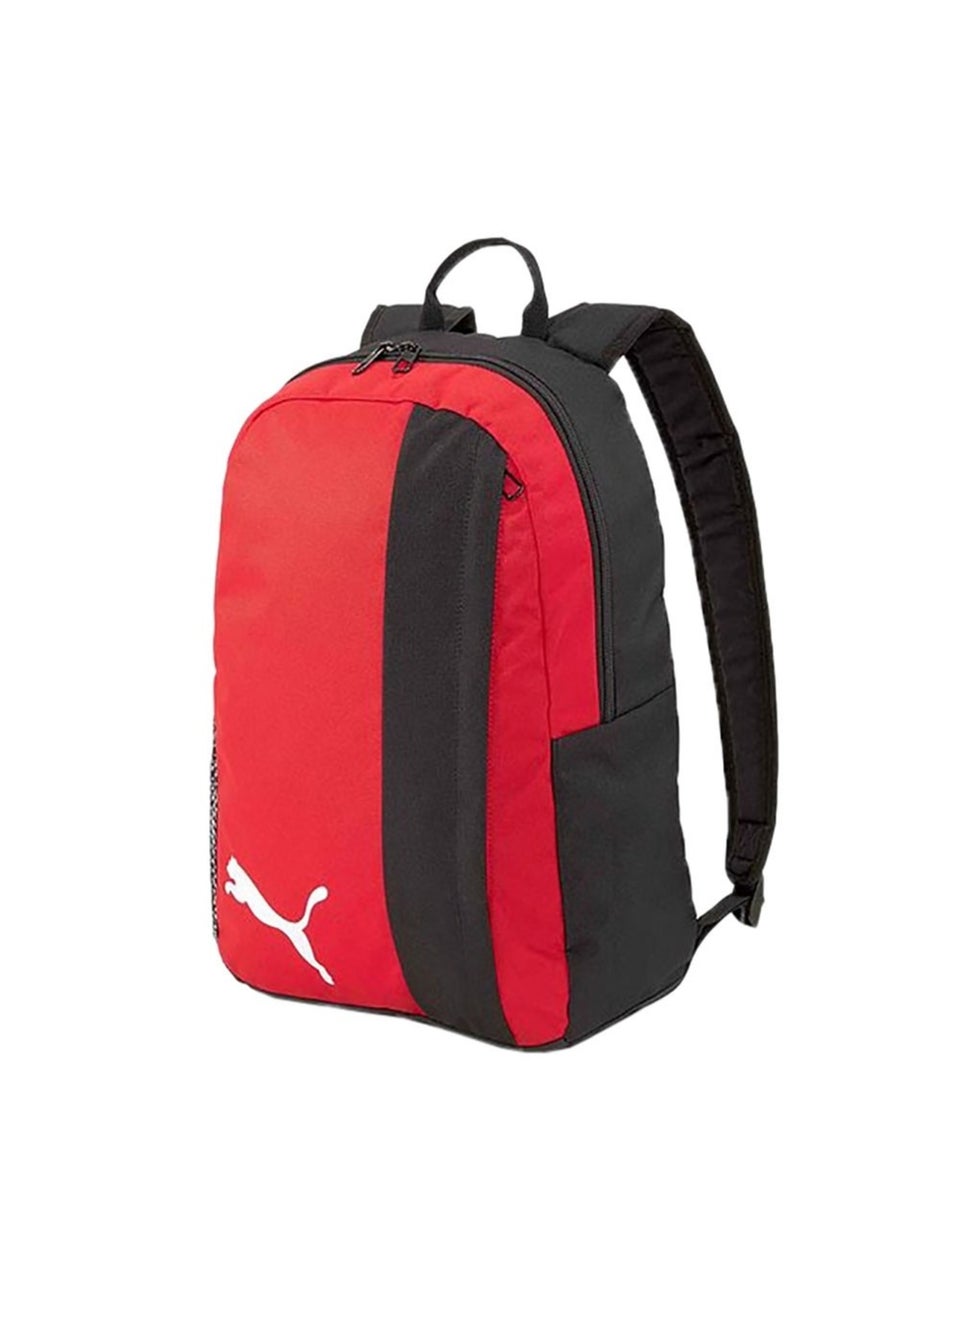 Puma Black/Red Team Goal 23 Backpack